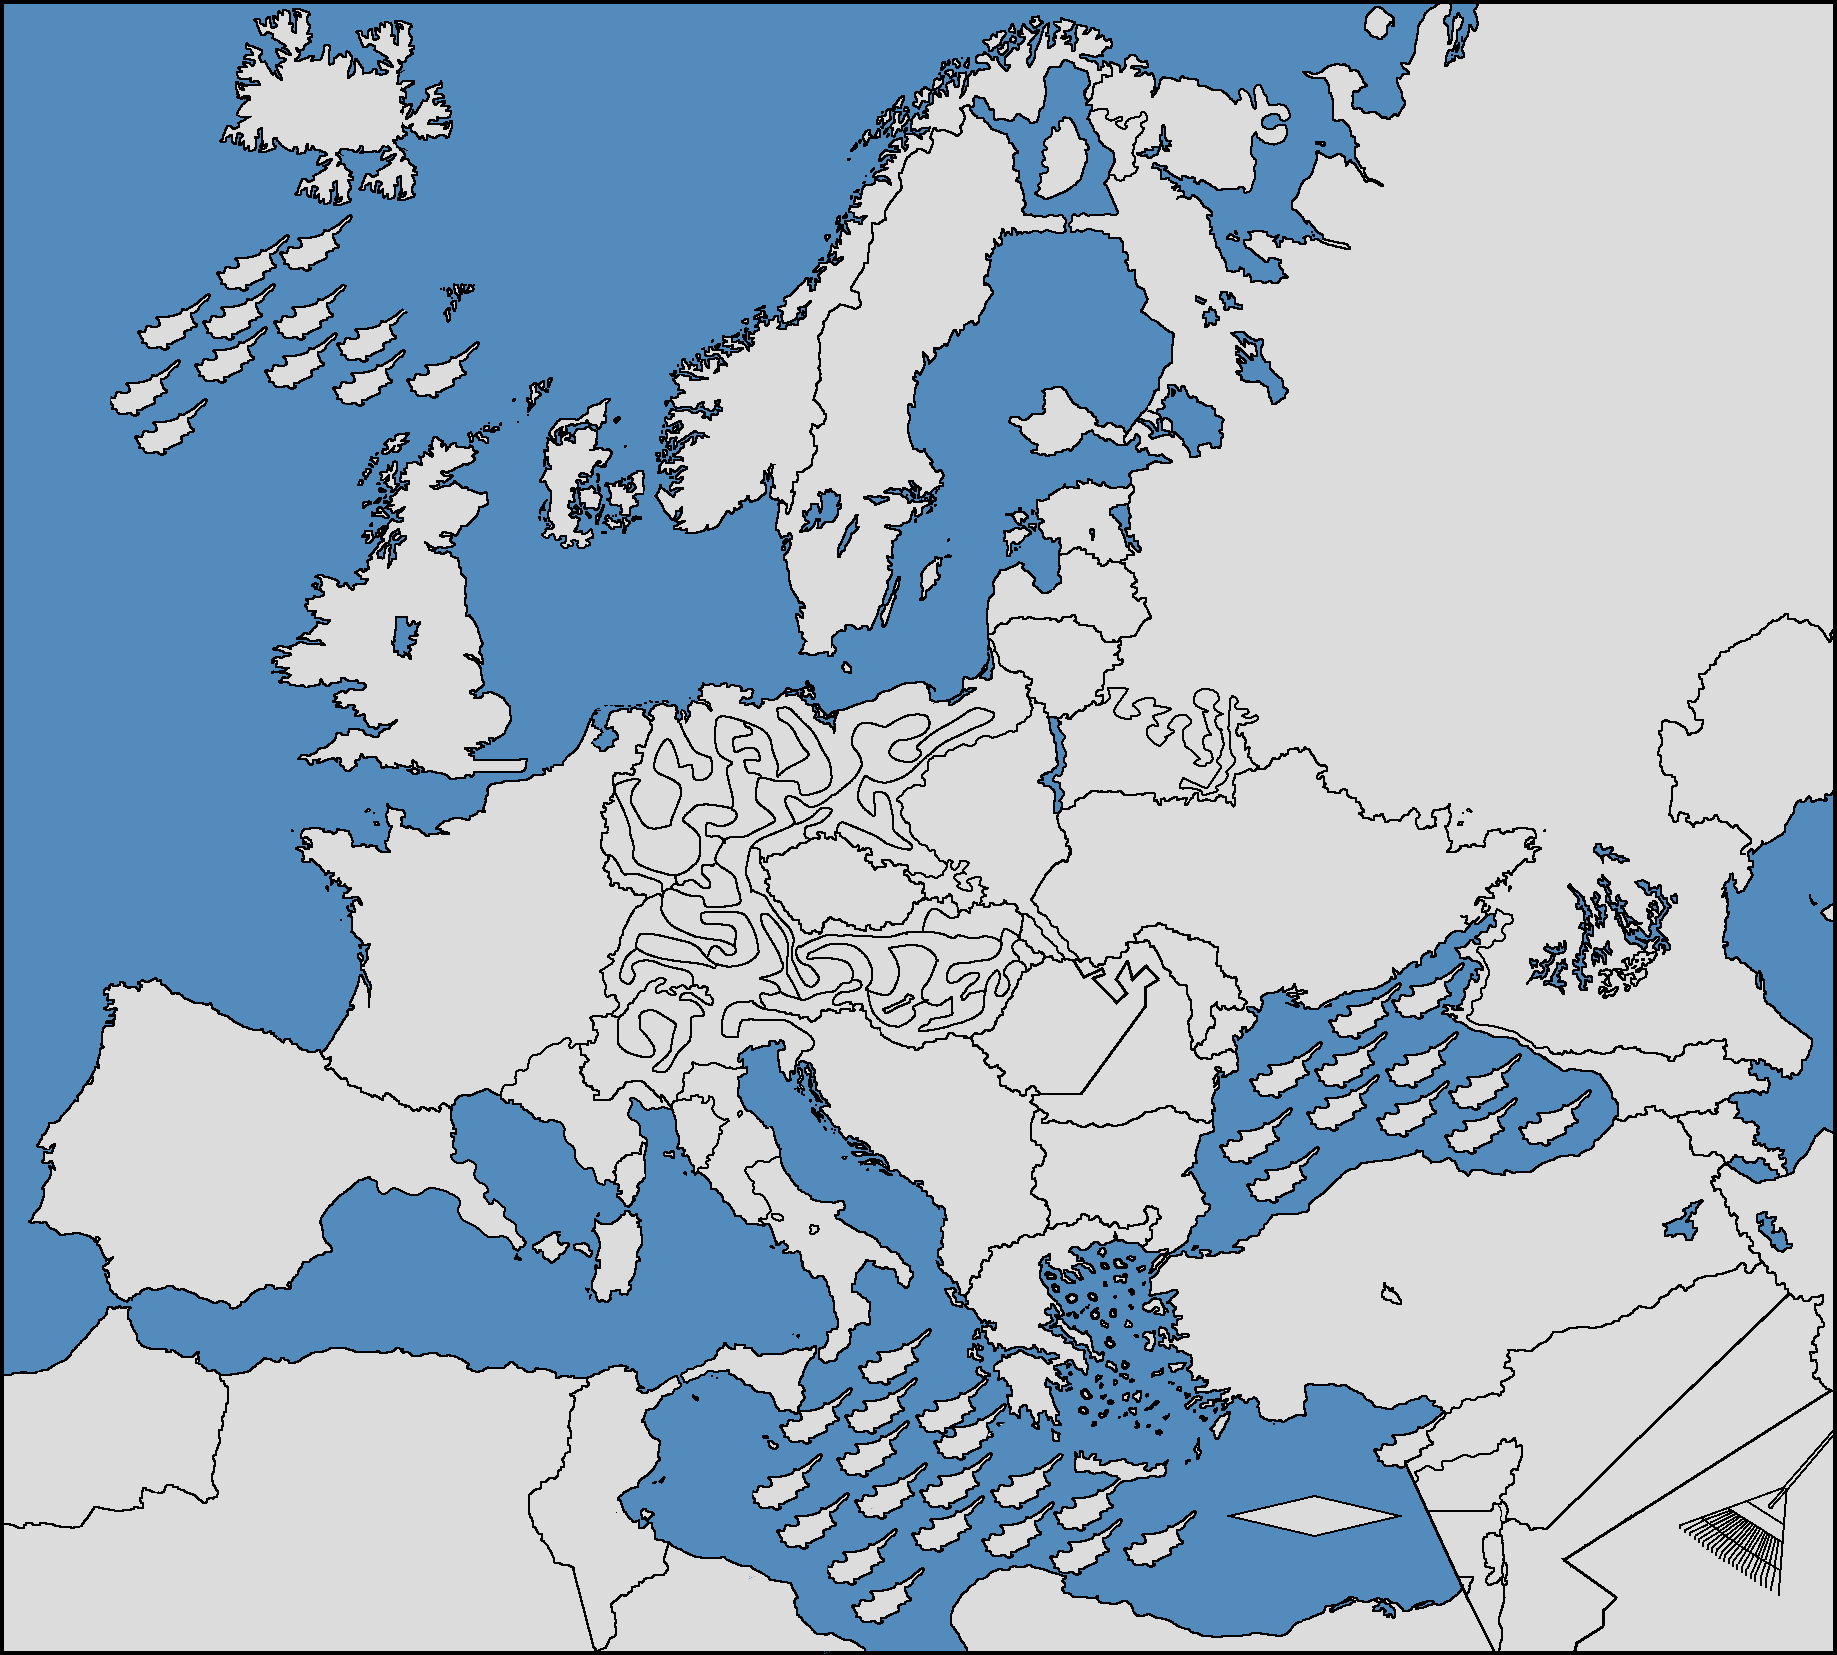 Europe Map In Ohio ☠️☠️☠️☠️☠️☠️ Blank Meme Template